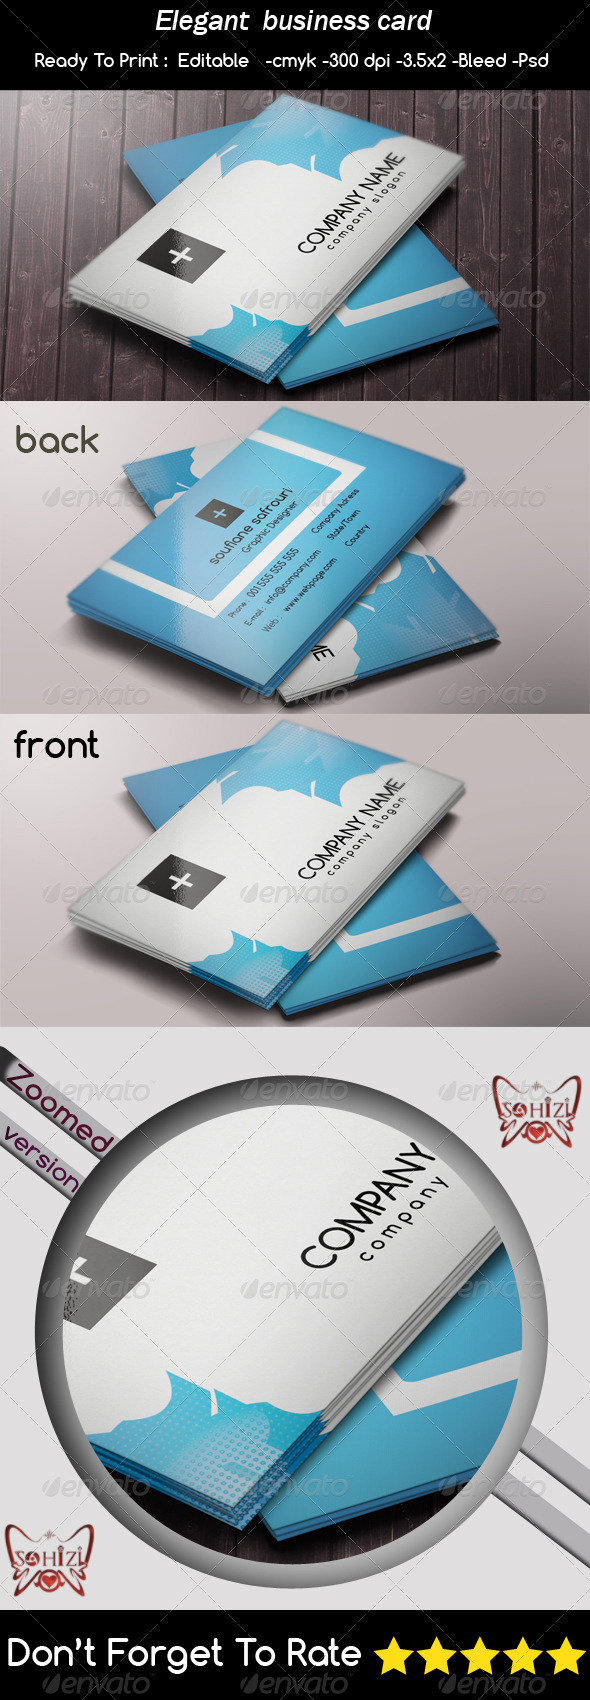 business business card card card design modern industr elegent business card print templates